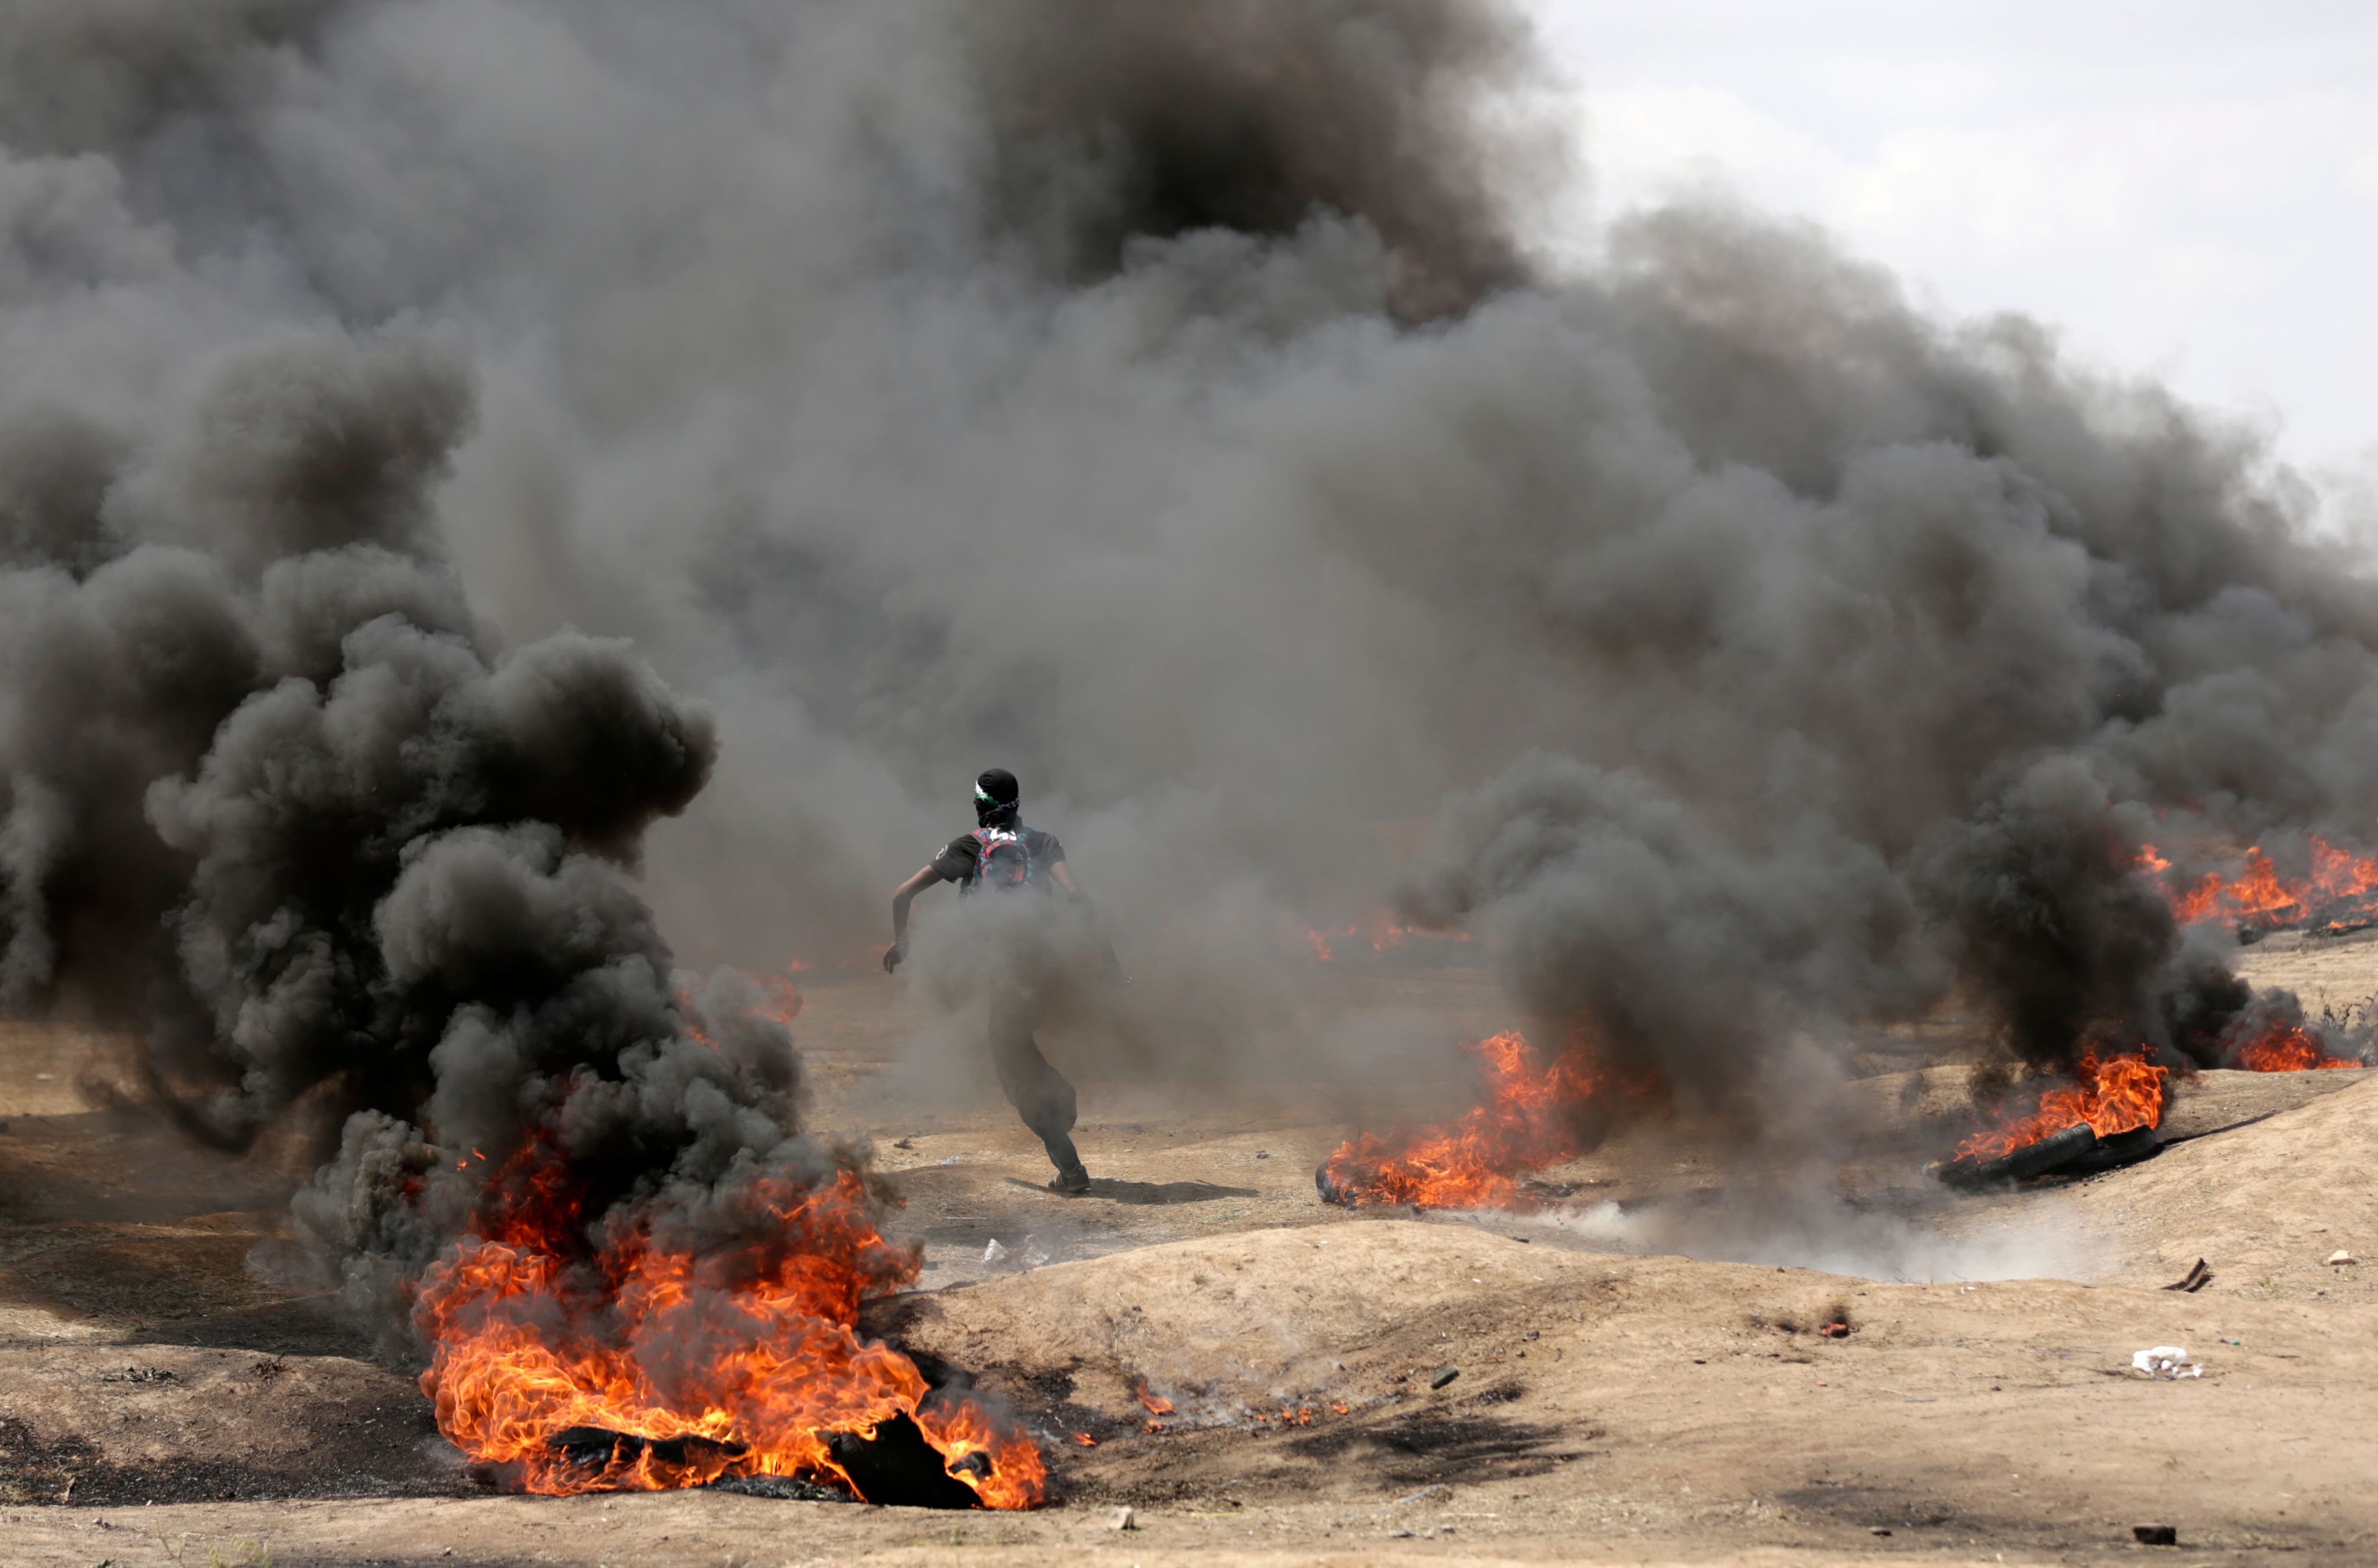 شاب فلسطينى يهرب من وسط الدخان الكثيف فى غزة